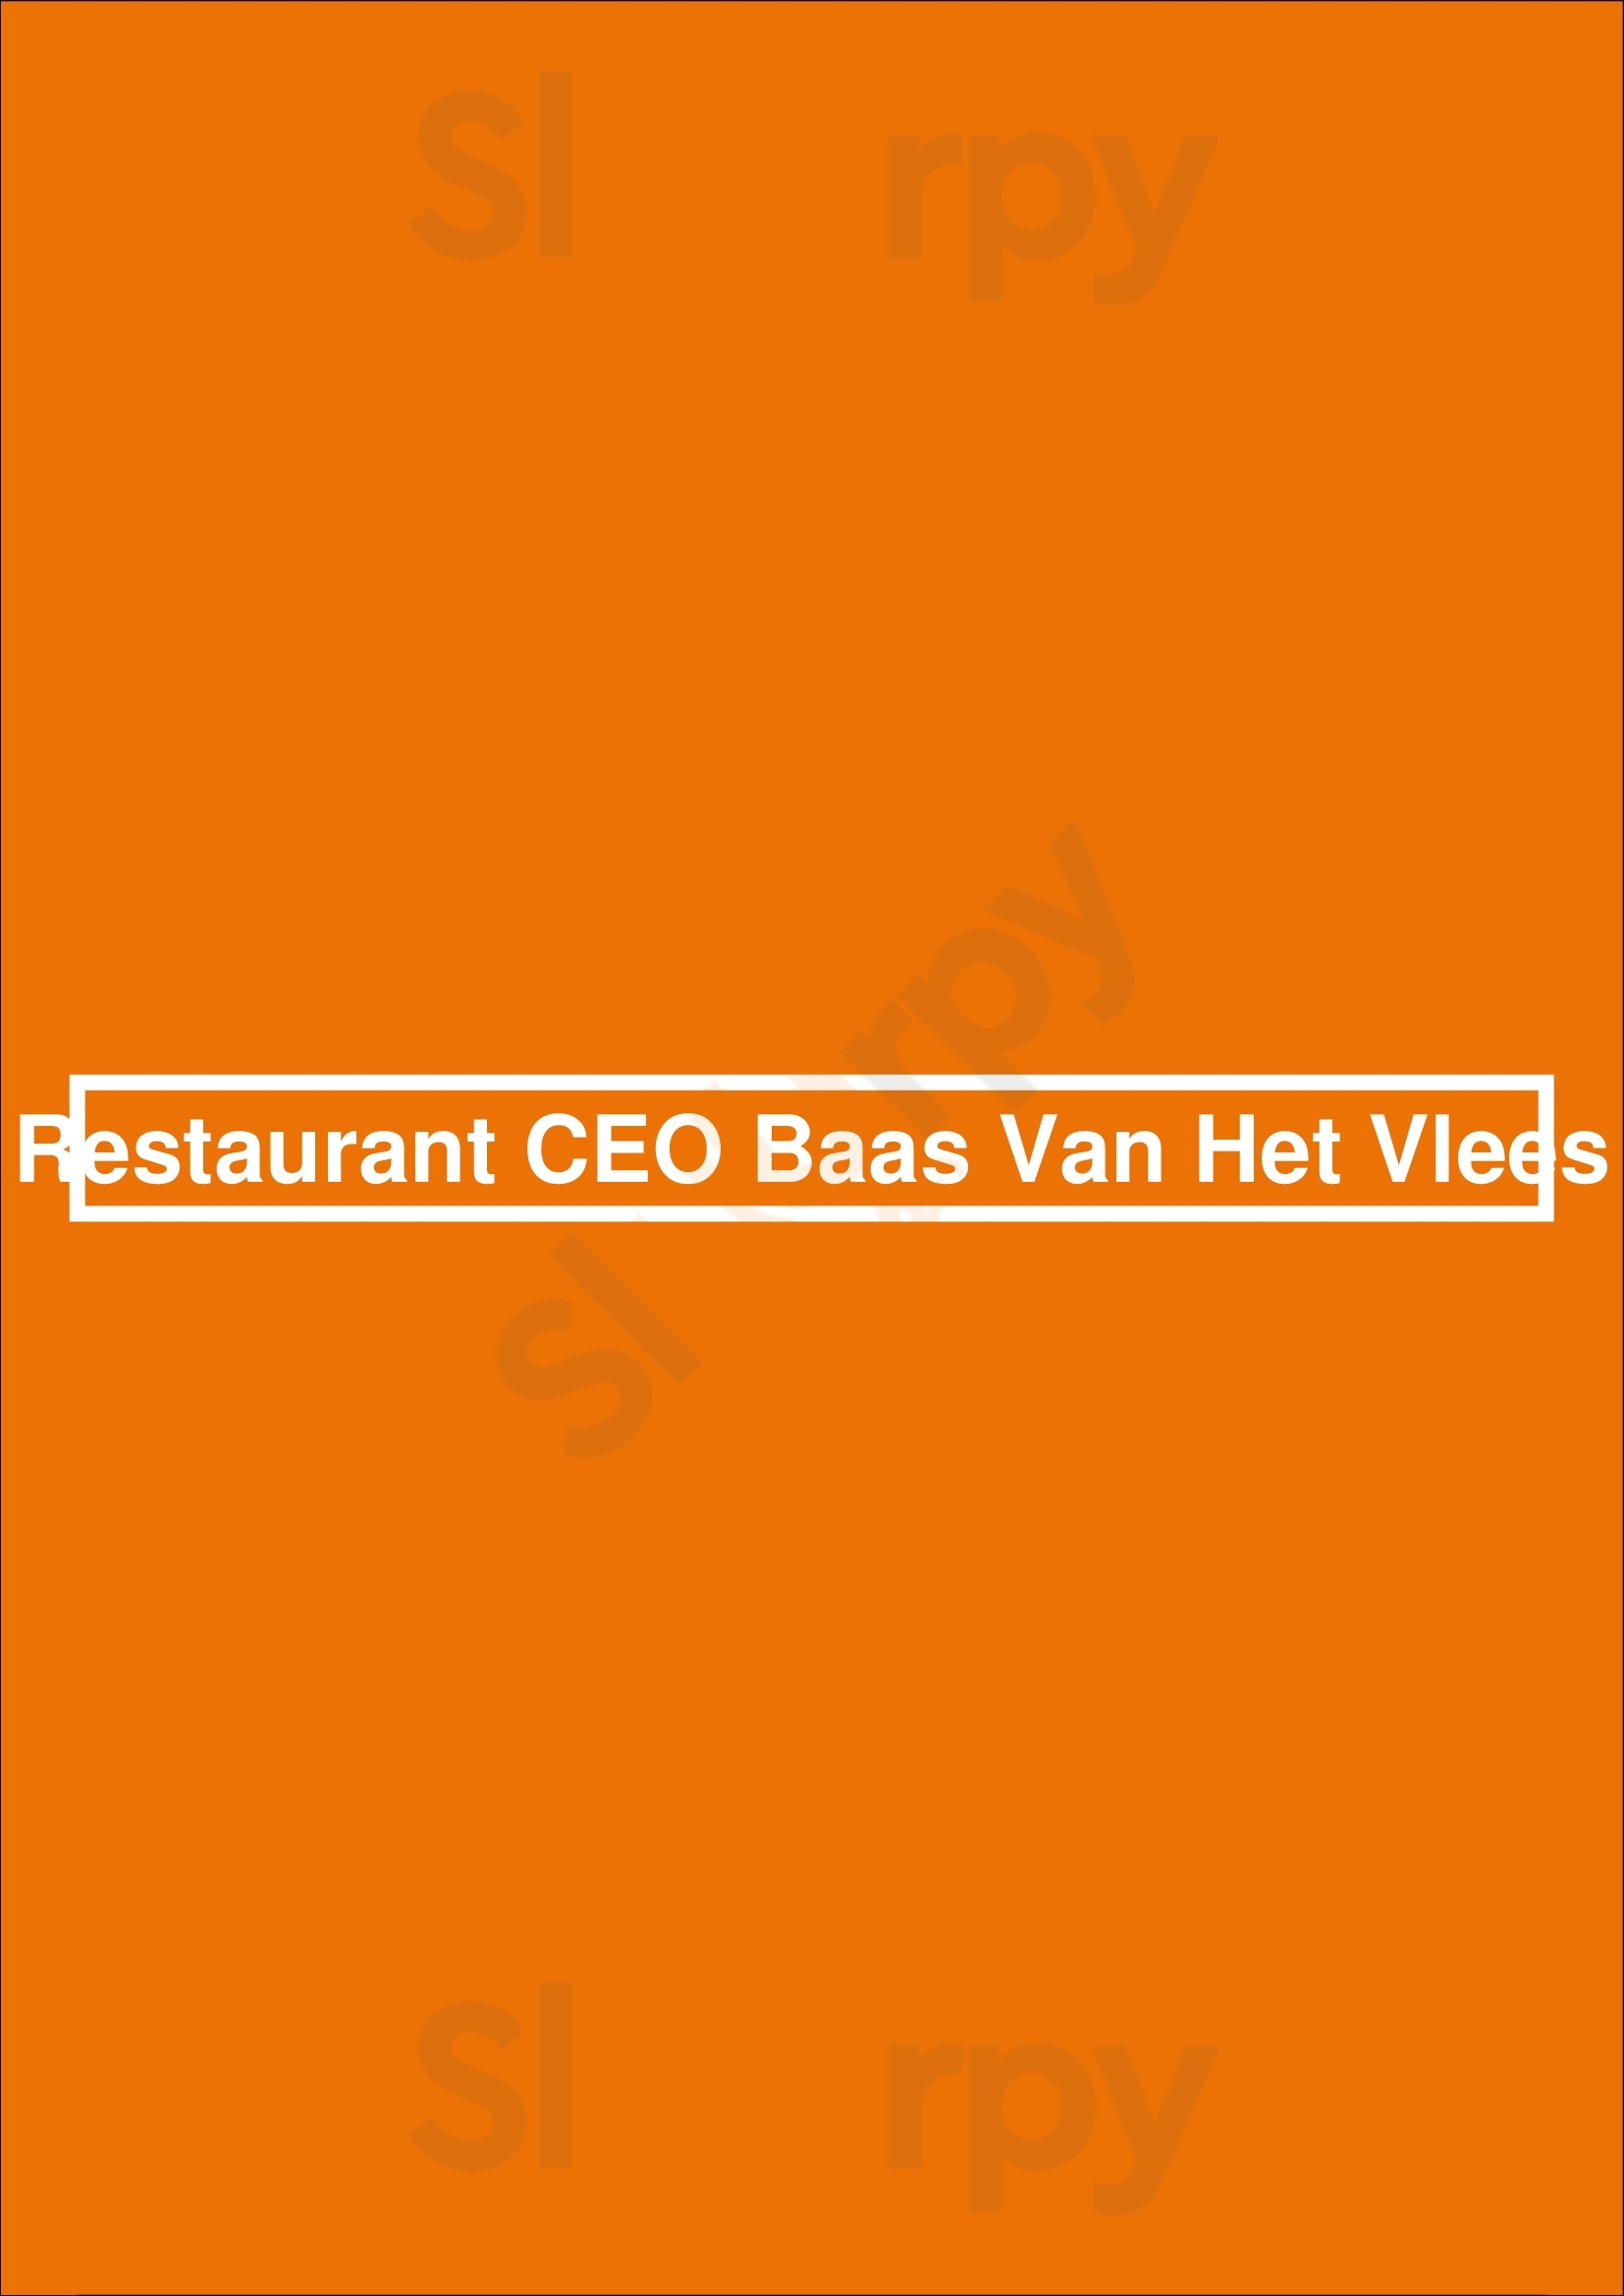 Restaurant Ceo Baas Van Het Vlees Rotterdam Menu - 1